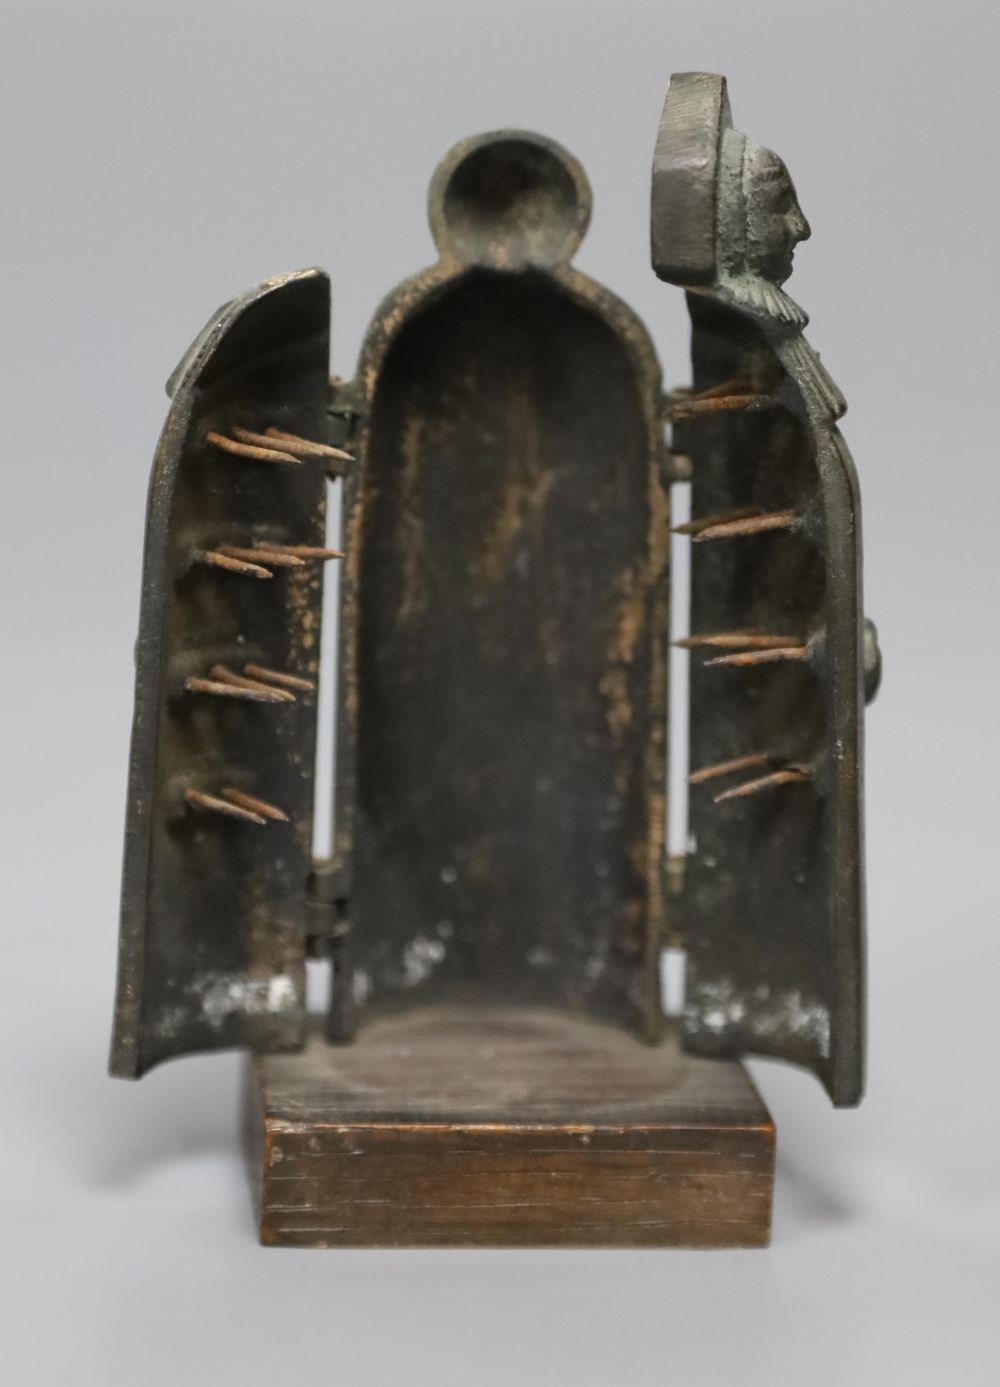 A miniature model of an iron maiden